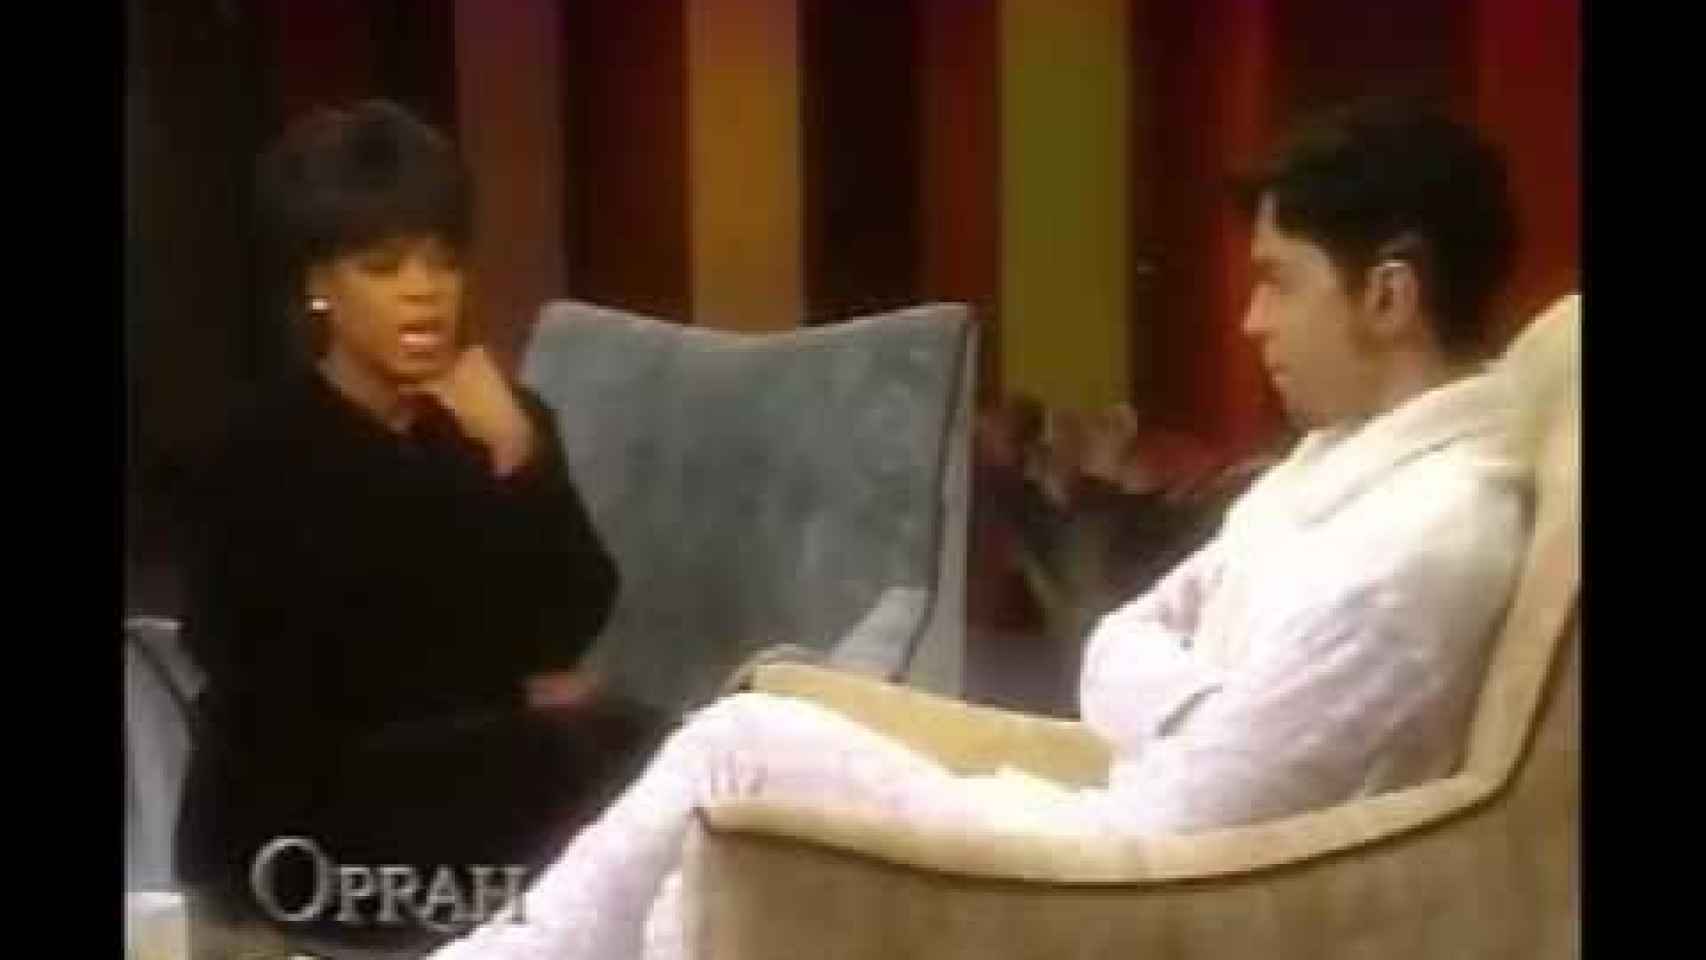 Prince concedió una entrevista a Oprah Winfrey